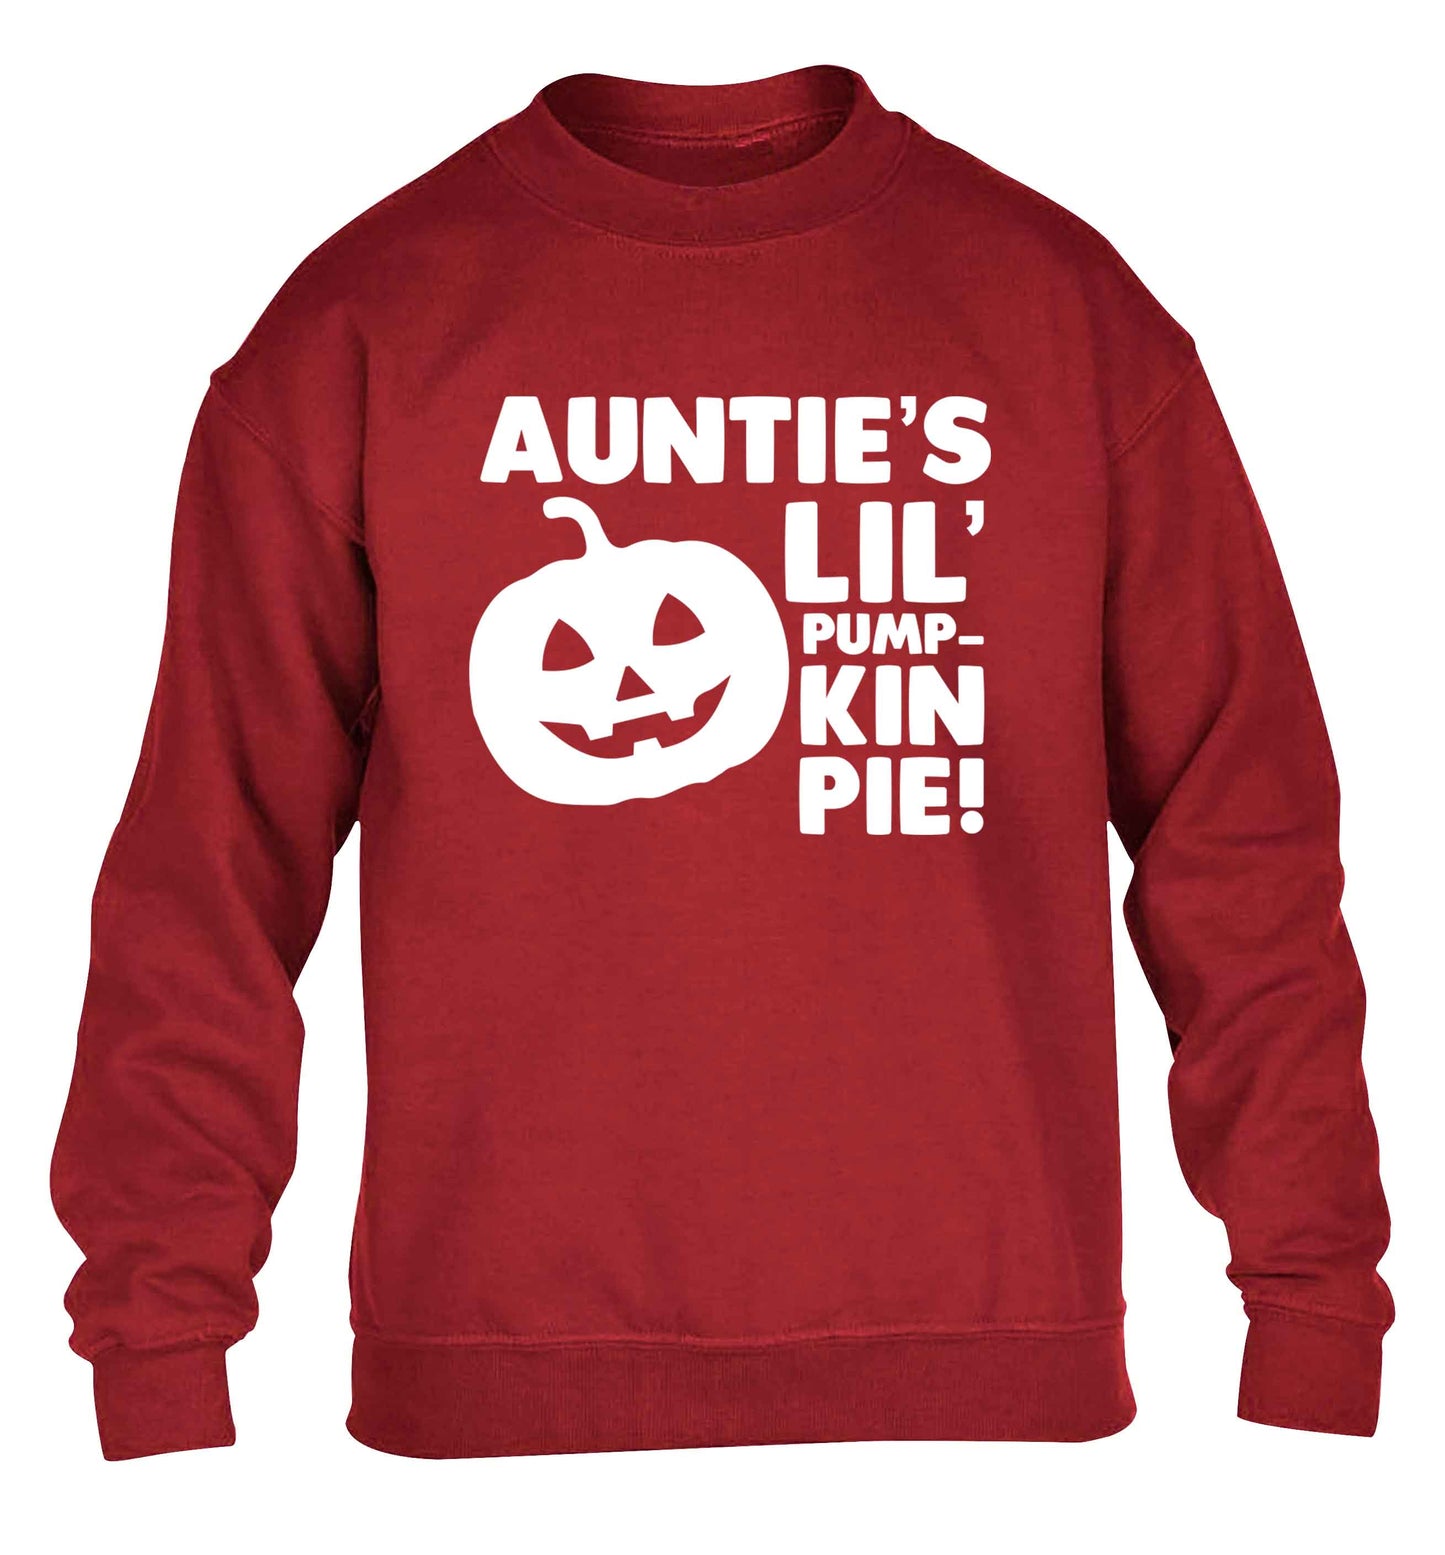 Auntie's lil' pumpkin pie children's grey sweater 12-13 Years